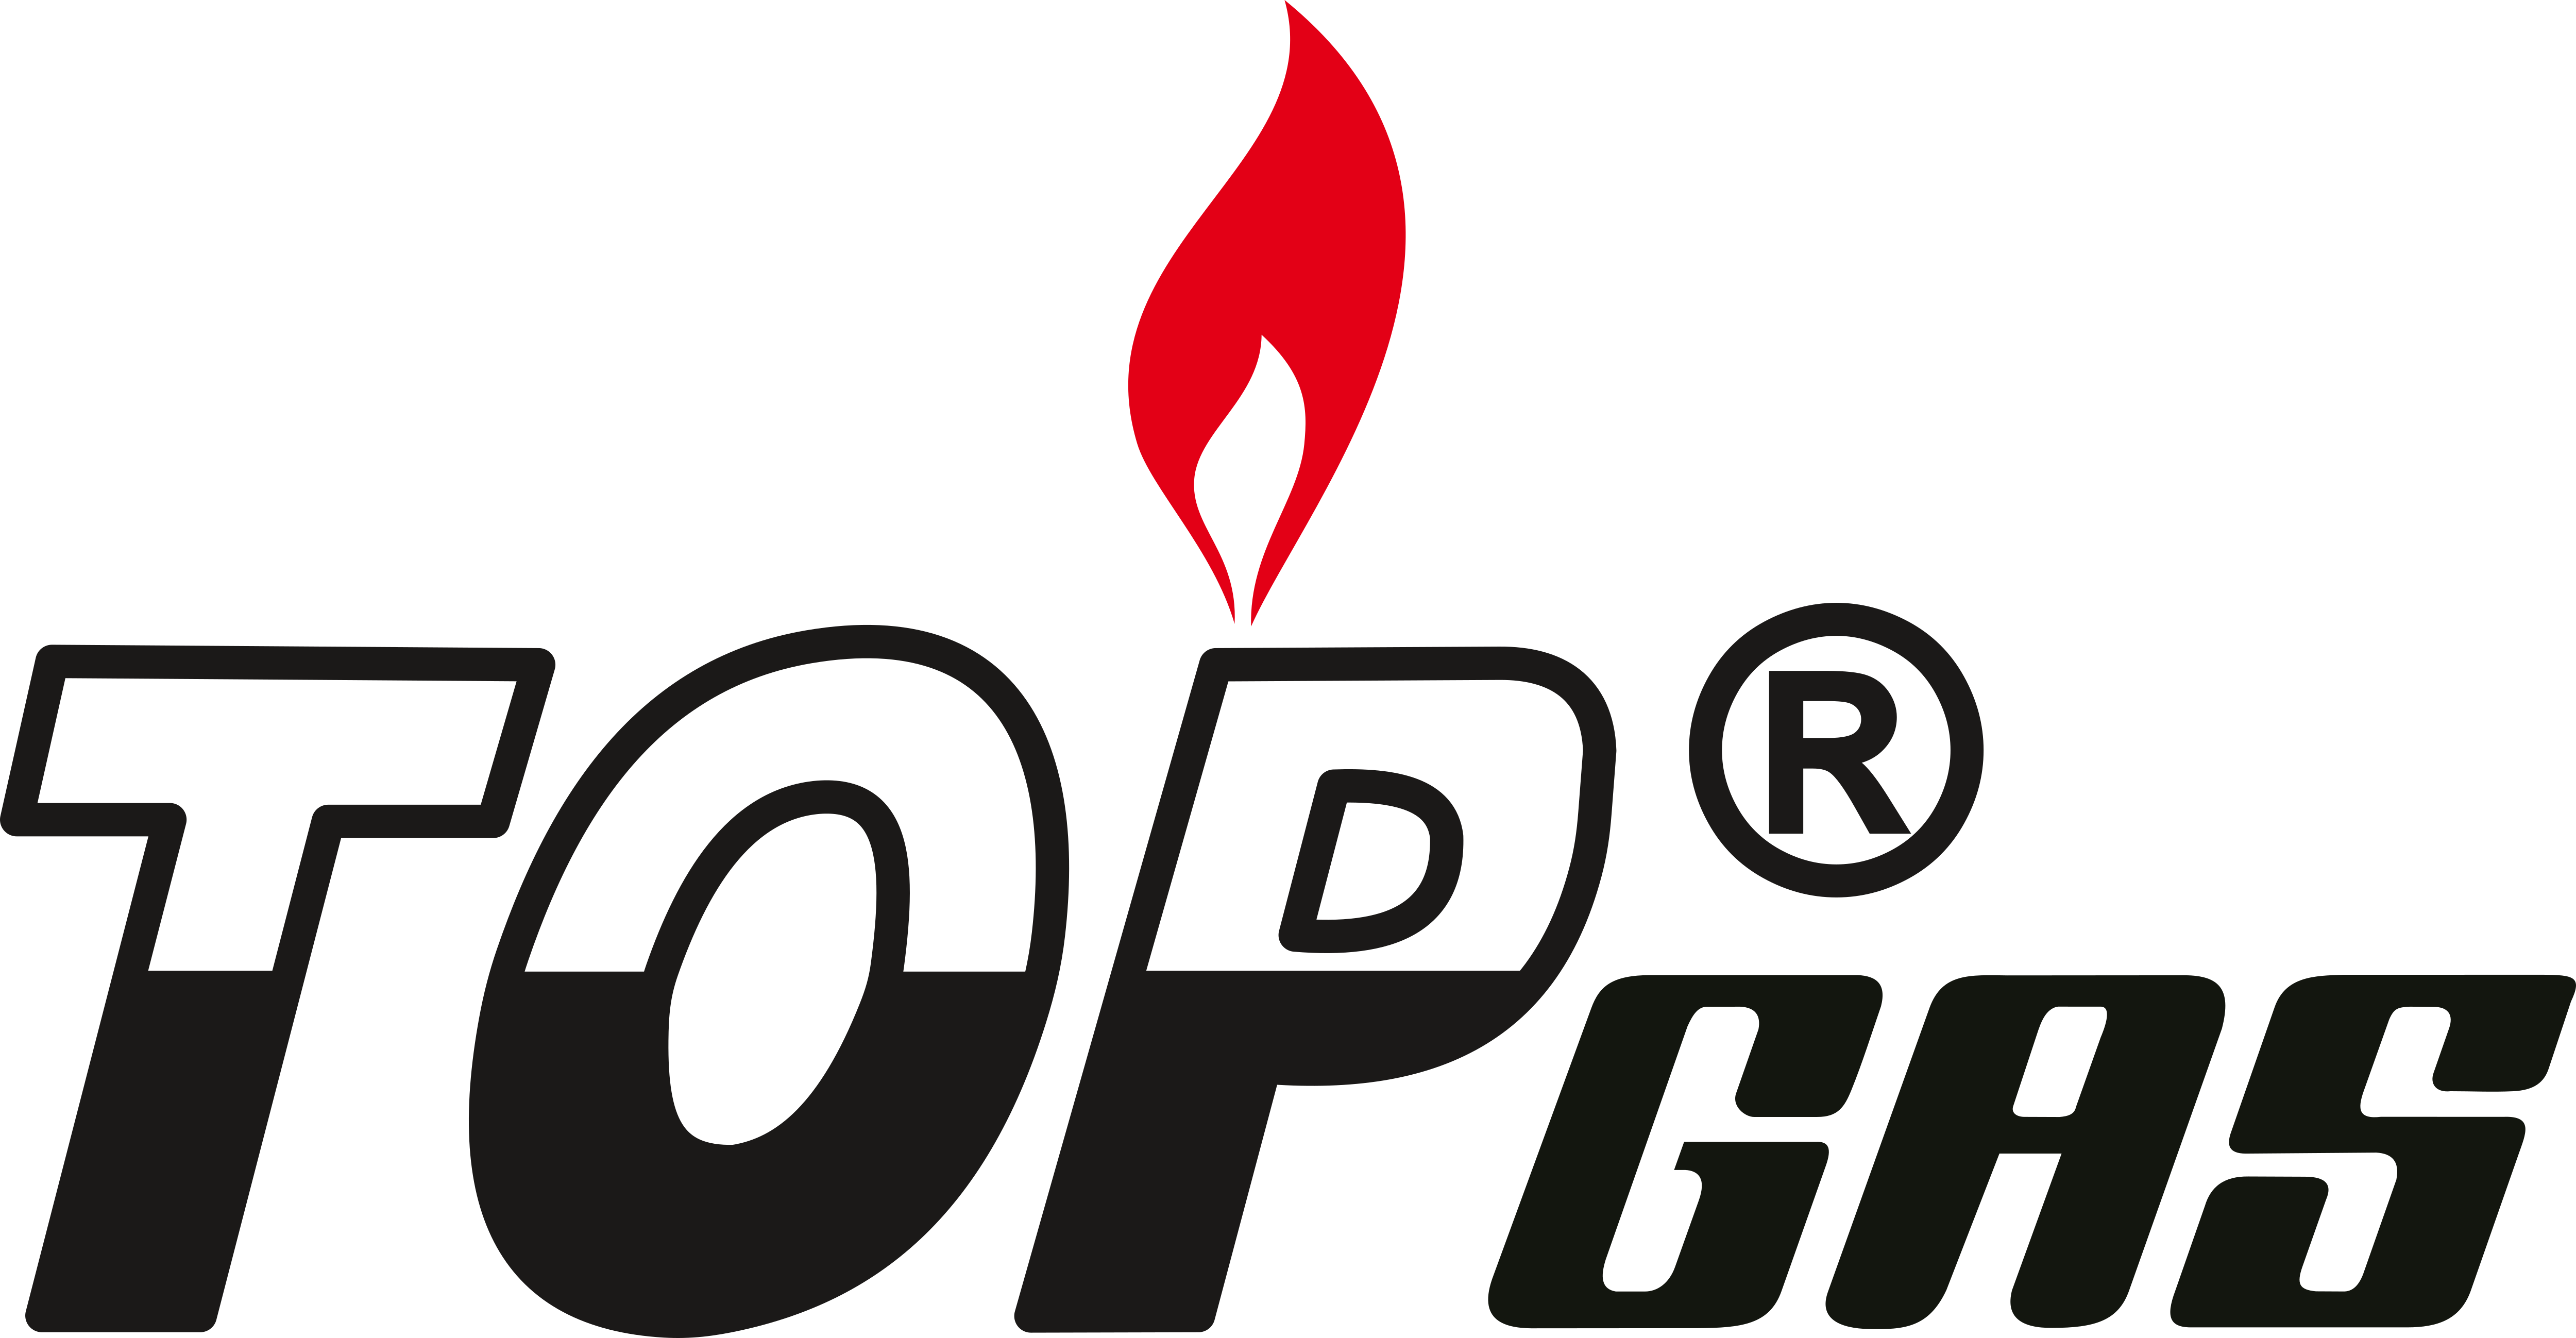 Top Gas – Logos Download